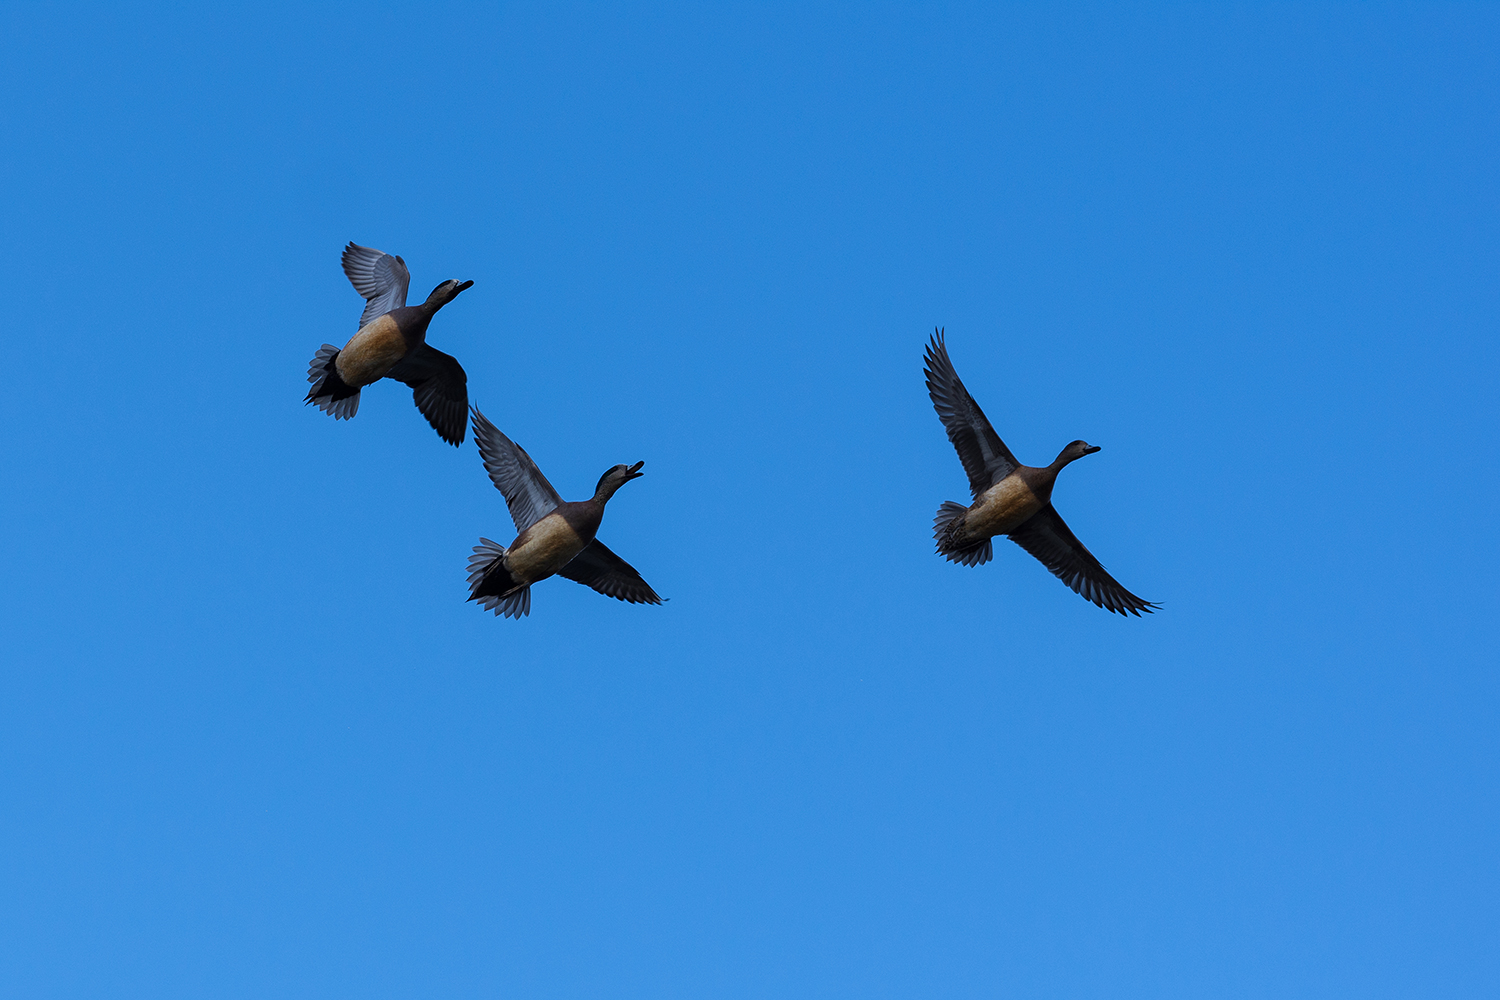 Kamloops Fauna ducks flying in the sky